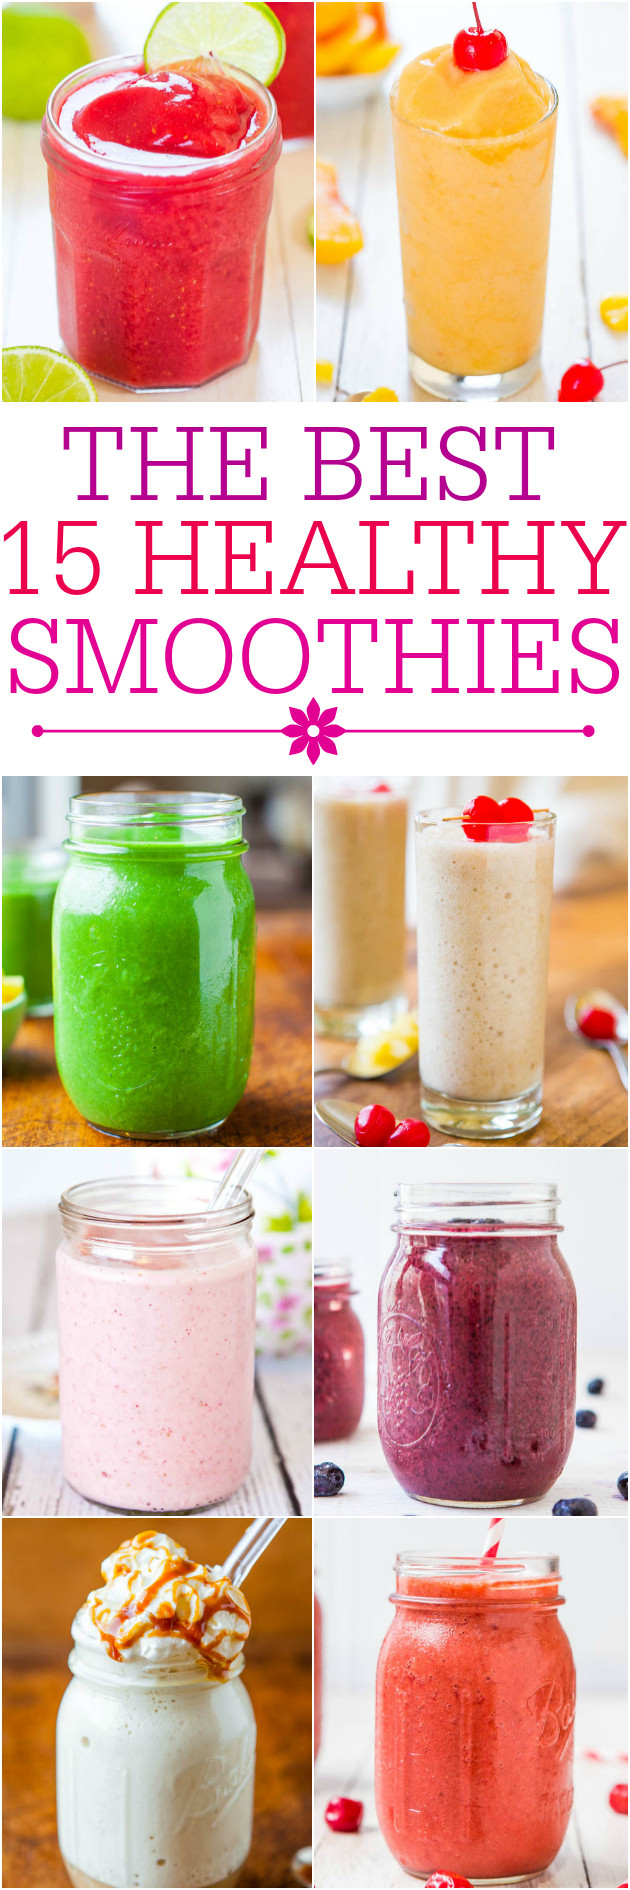 Fruit Yogurt Smoothies Recipes
 Frozen Fruit Smoothie with Yogurt 3 Ingre nts